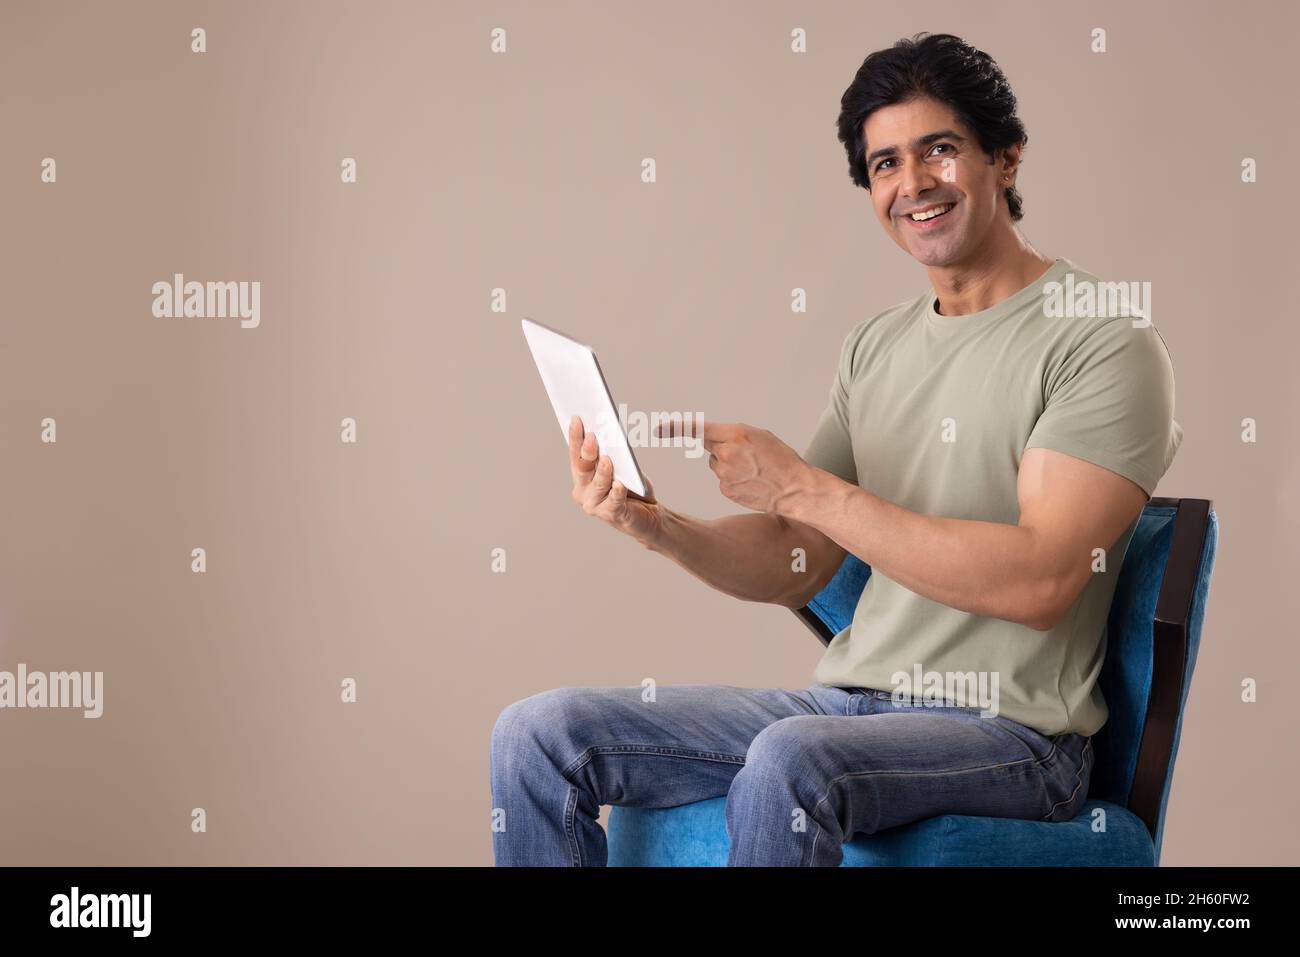 Un Indien heureux qui se pose devant l'appareil photo tout en tenant une tablette Banque D'Images